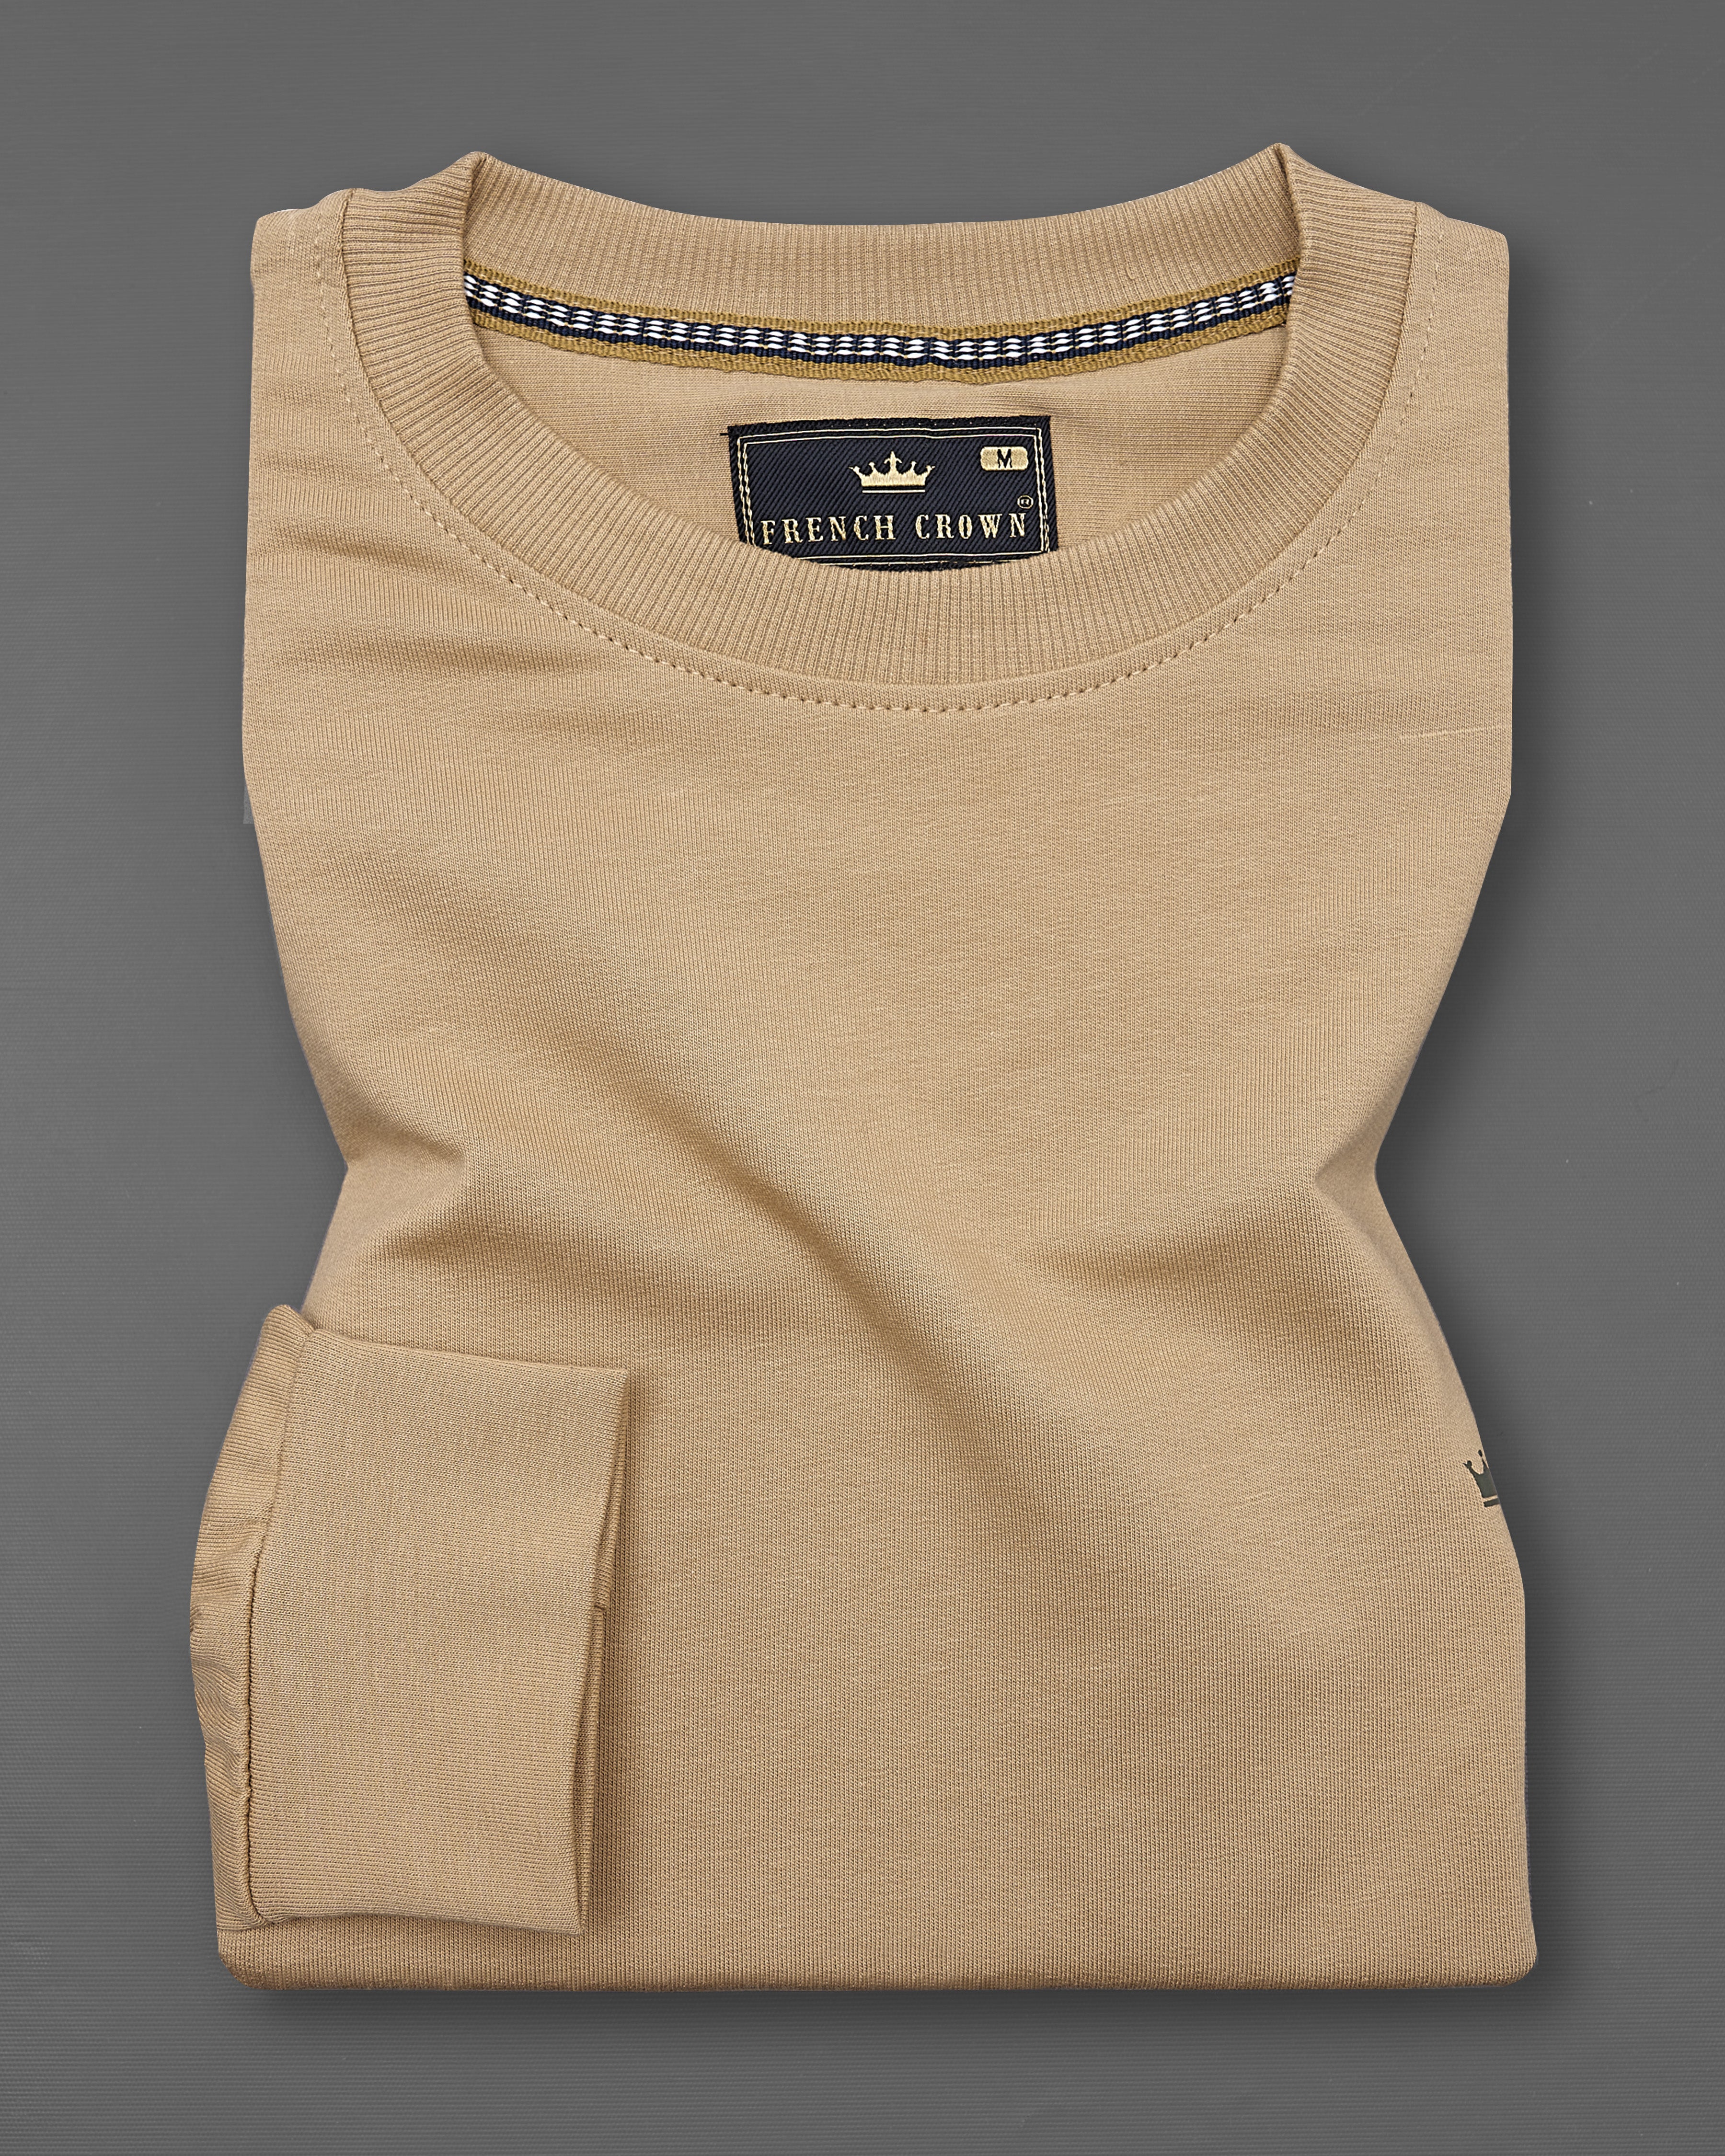 Desert Brown Block Pattern Full Sleeve Premium Cotton Heavyweight Sweatshirt TS674-S, TS674-M, TS674-L, TS674-XL, TS674-XXL